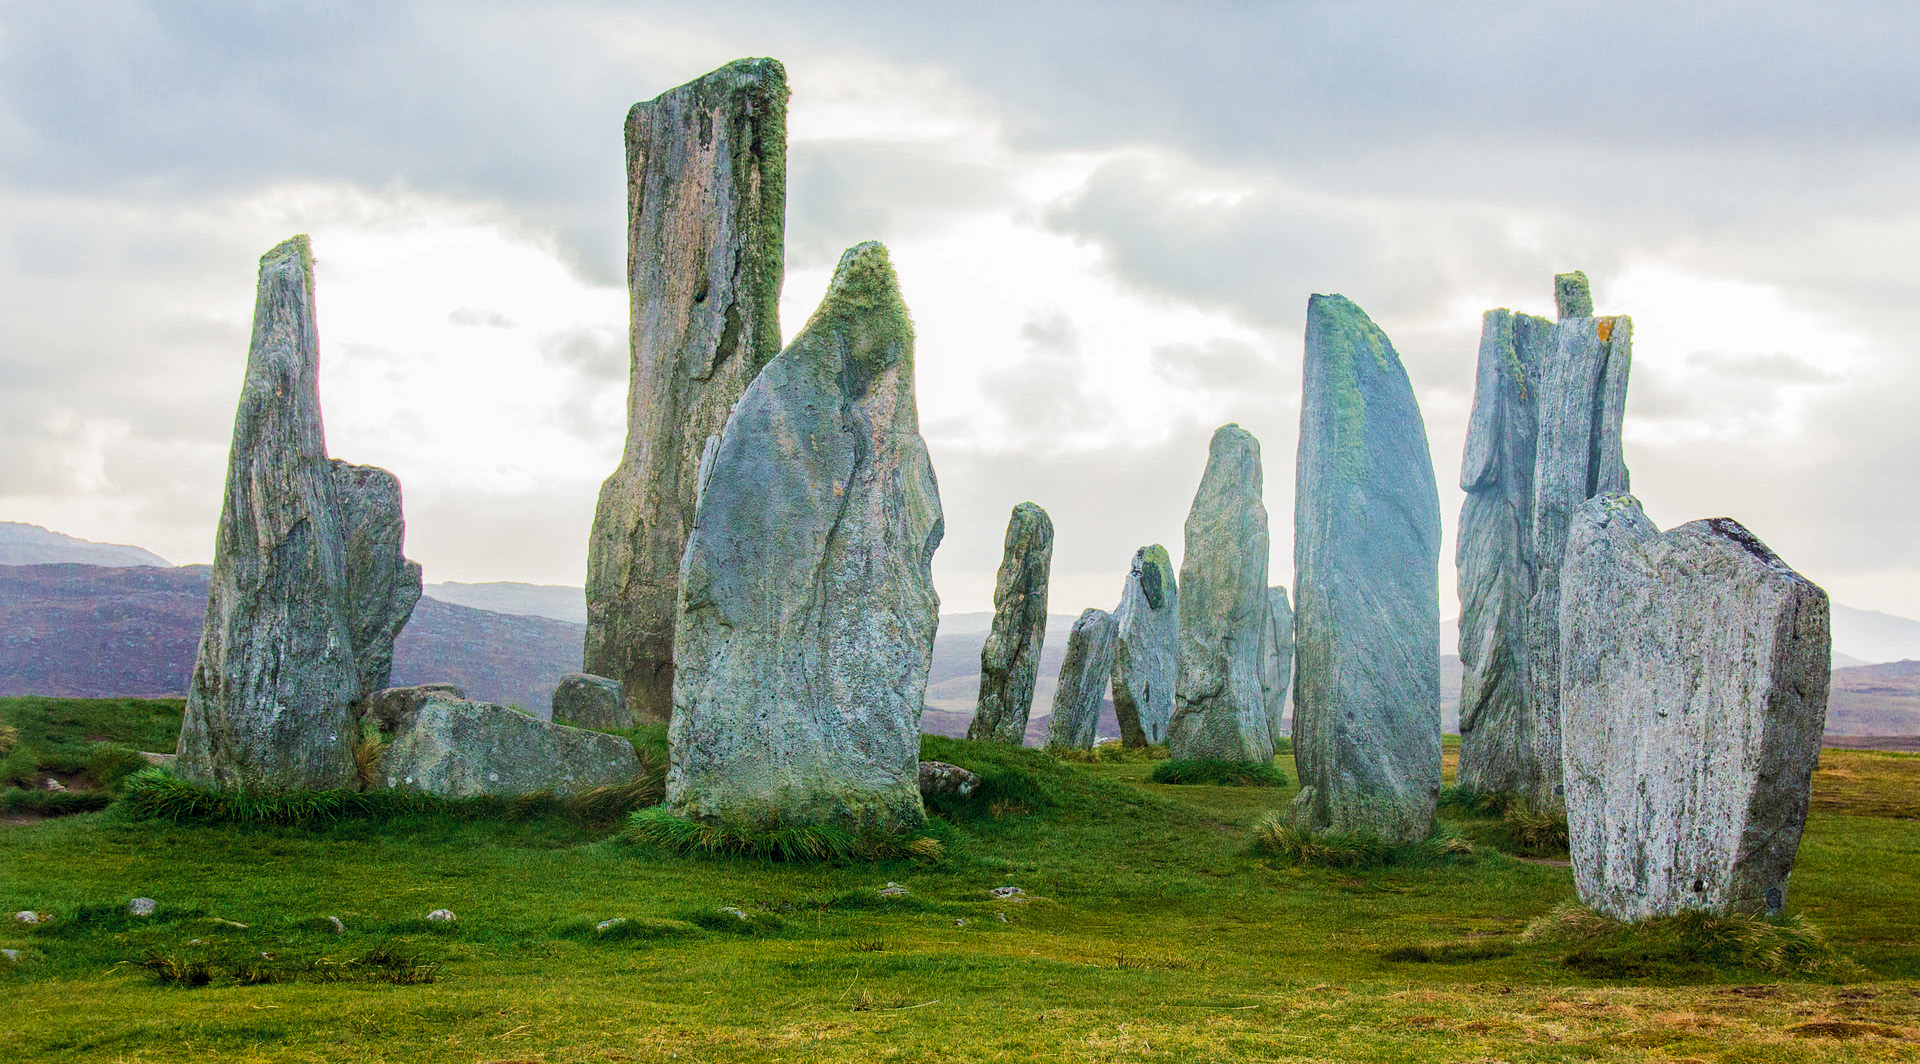 Standing stones. Камни Калланиш остров Льюис Шотландия. Менгиры Калланиша, Шотландия. Камни Калланиш. Крымский Стоунхендж.